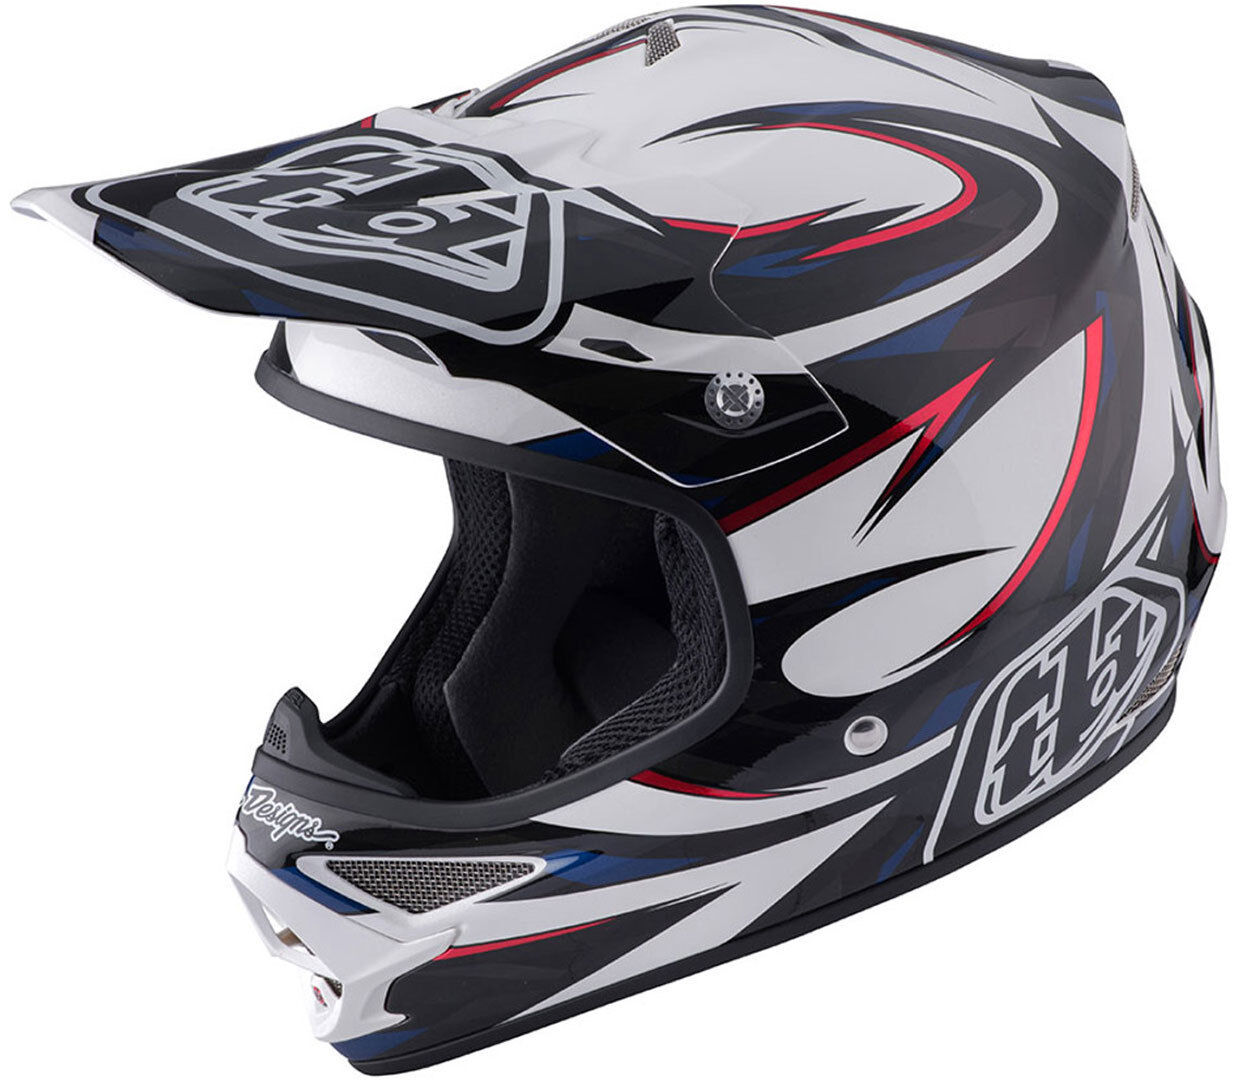 Lee Troy Lee Designs Air Vortex Motorcycle Cross Helmet  - Blue Silver